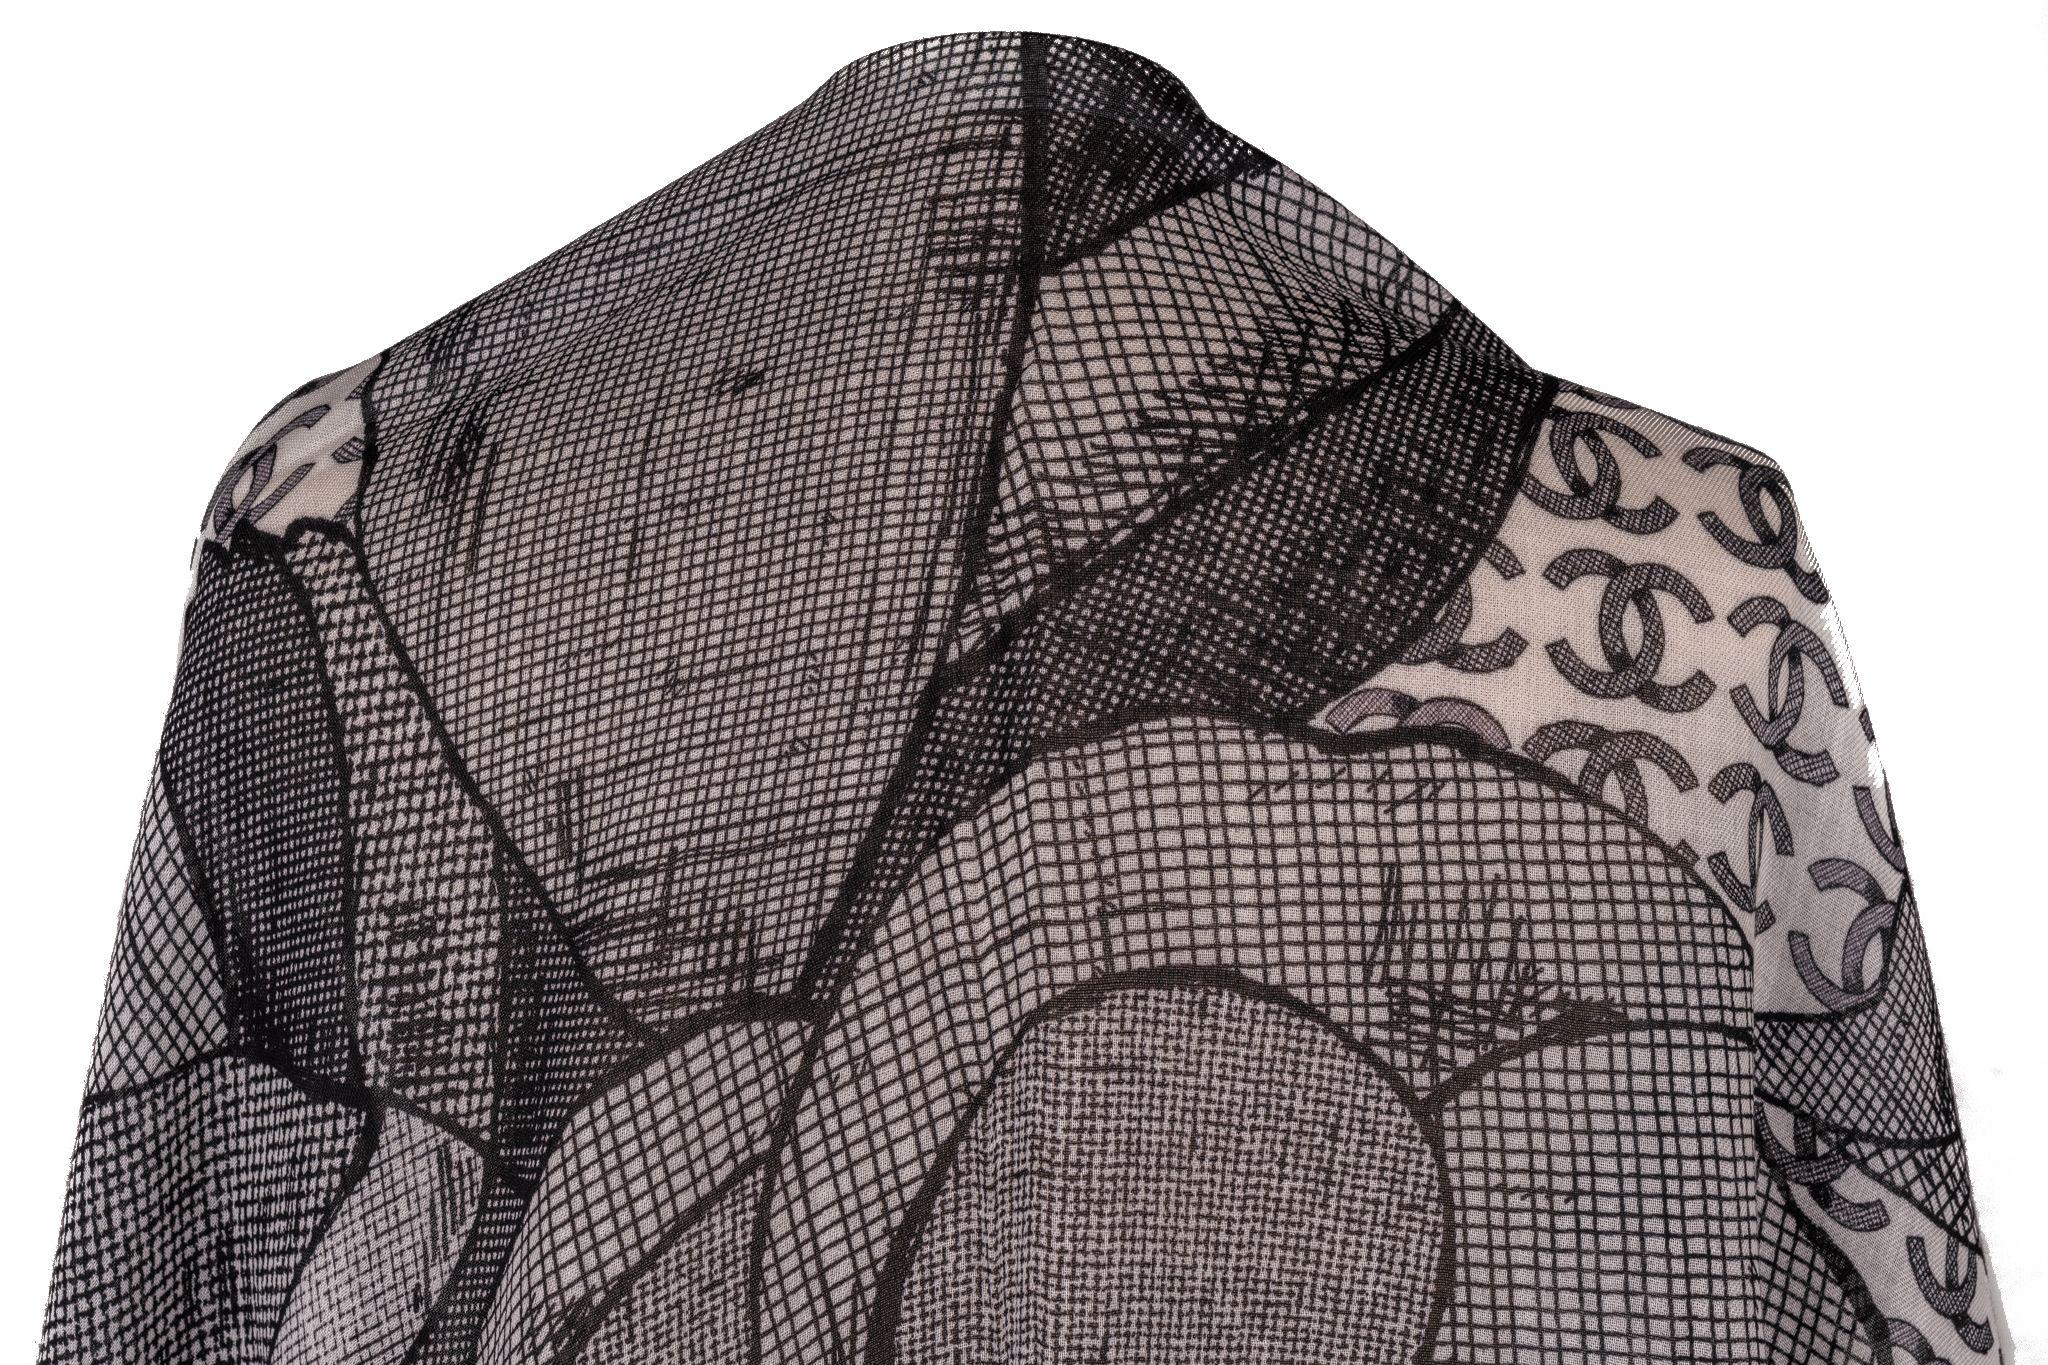 Chanel Kaschmirschal in Grau. Das Muster zeigt eine große Chanel-Kamelie, die von mehreren CC-Logos umgeben ist. Der Artikel ist in neuem Zustand.